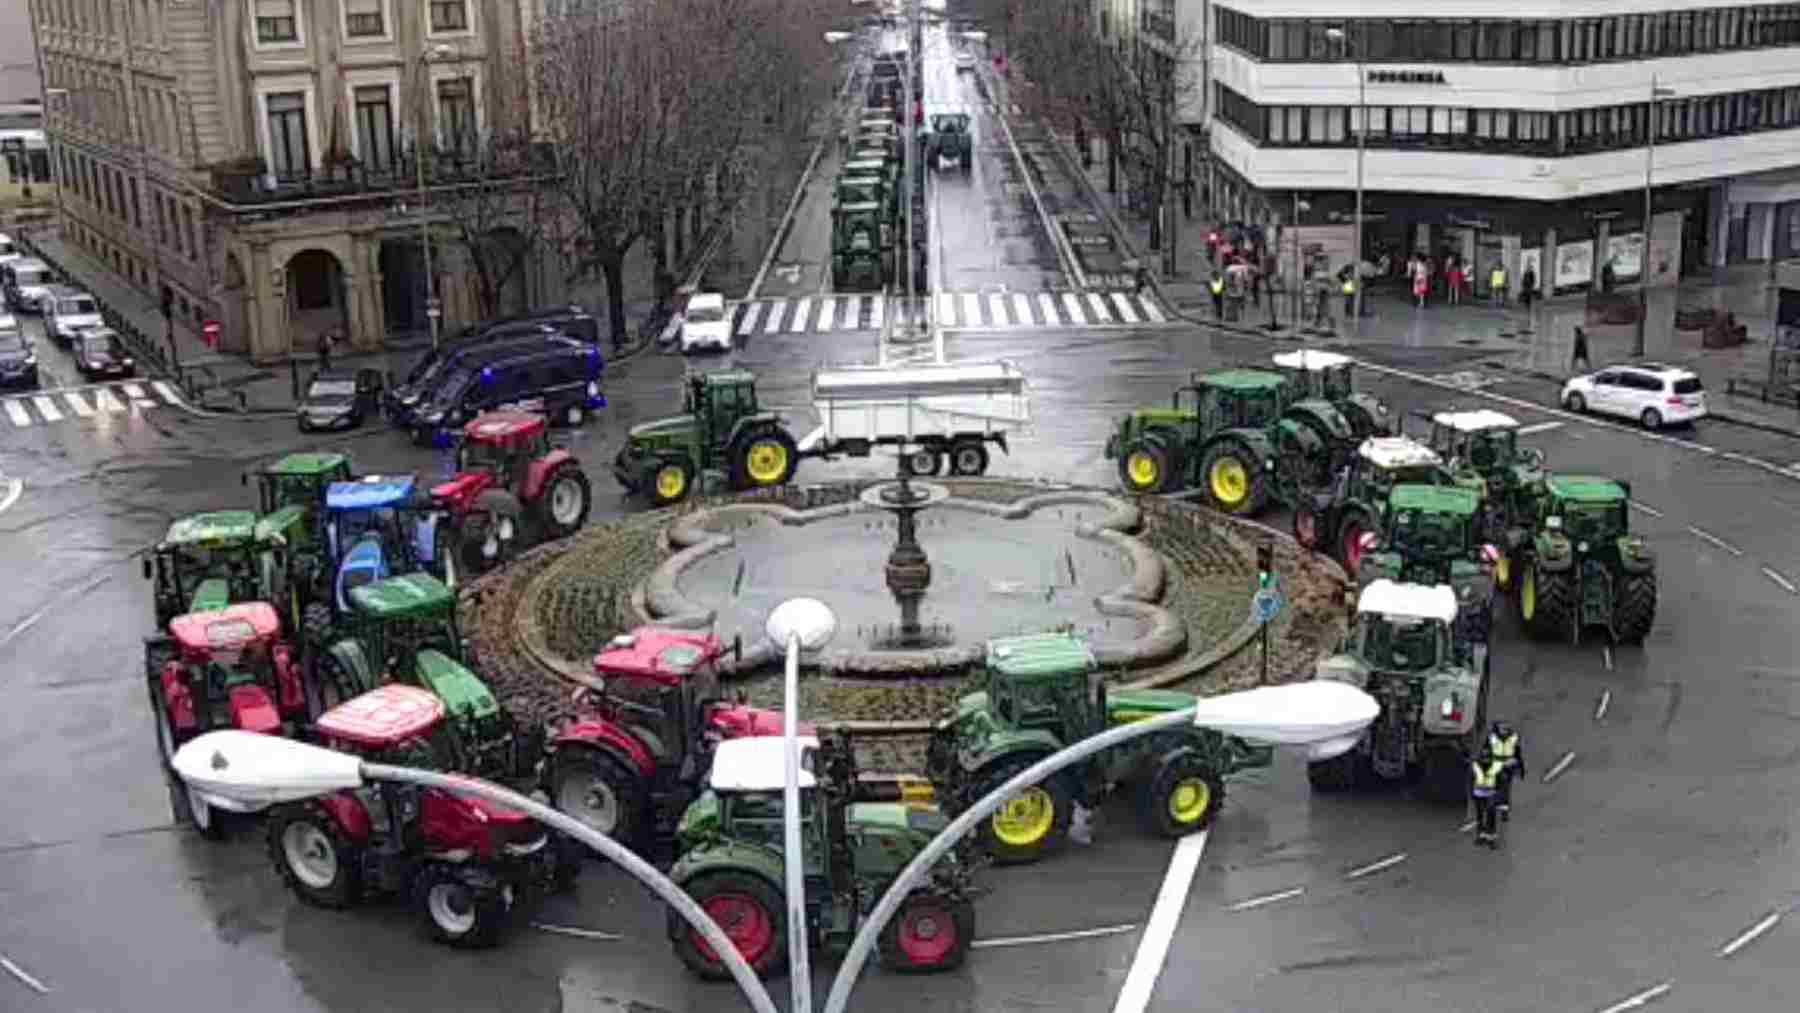 Los agricultores tractores vuelven a colapsar con sus tractores el centro de Pamplona